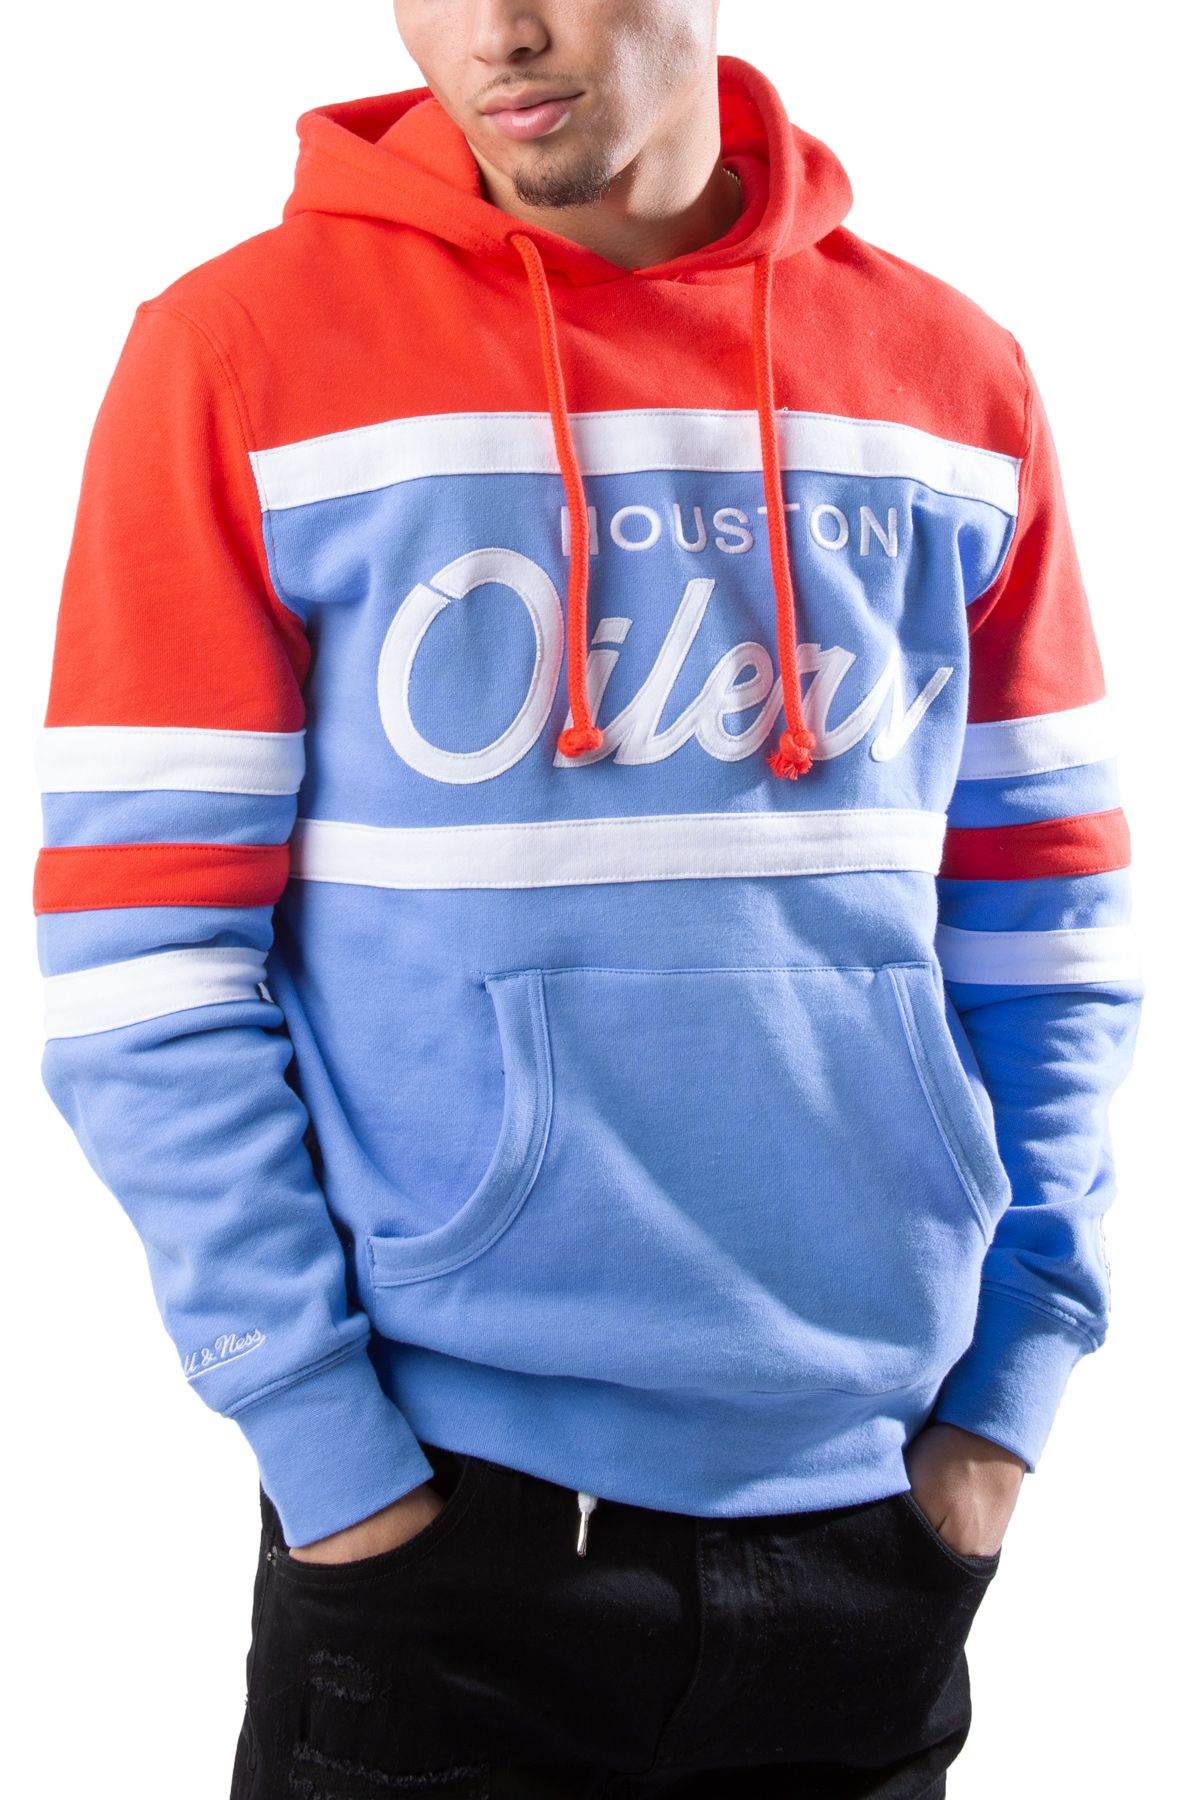 Oilers Sweatshirts & Hoodies for Sale